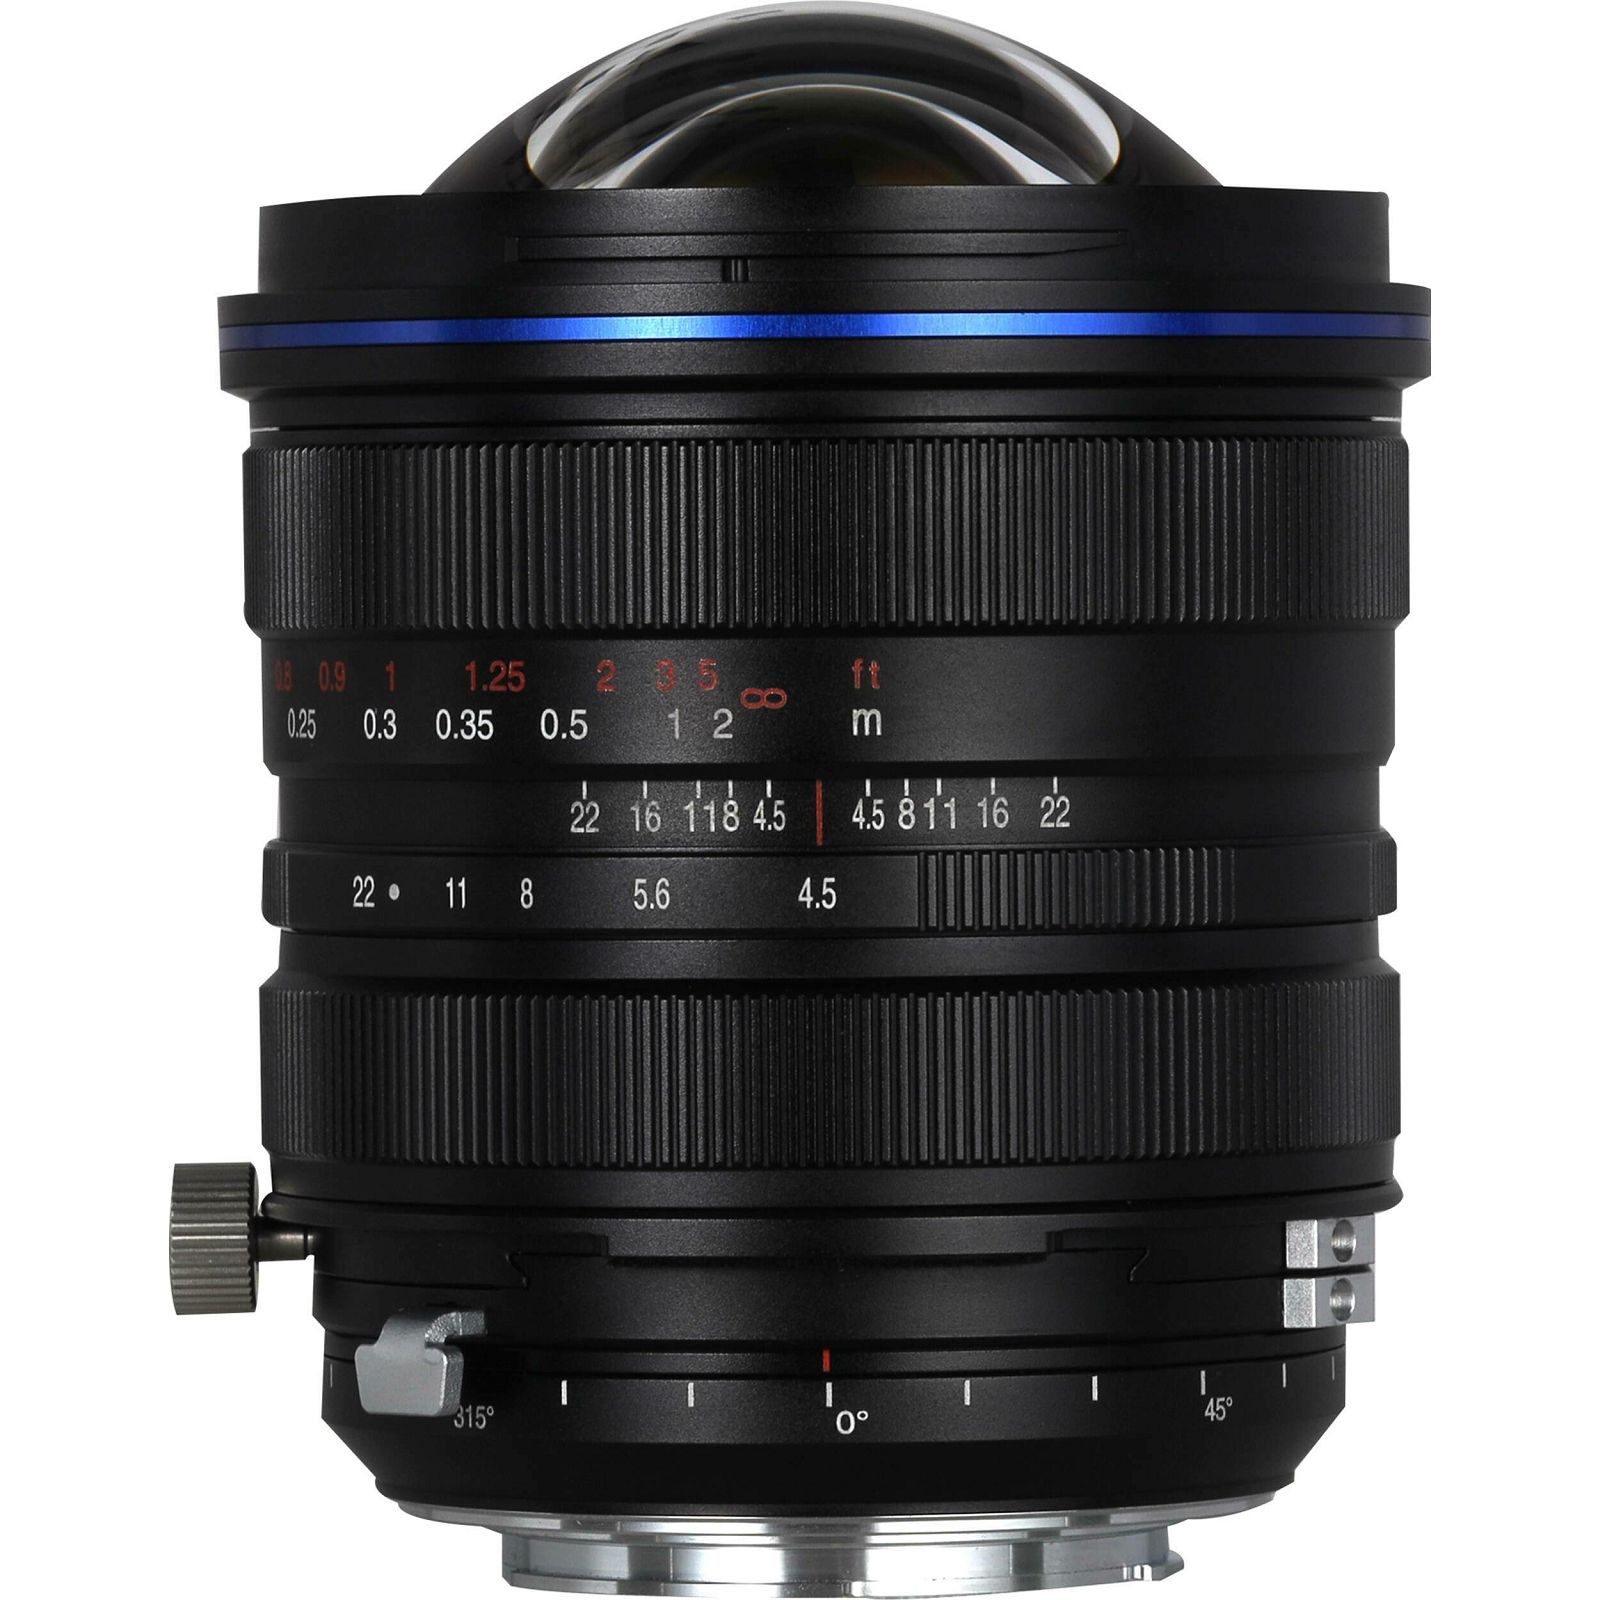 Venus Optics Laowa 15mm f/4.5 Zero-D Shift širokokutni objektiv za Nikon FX